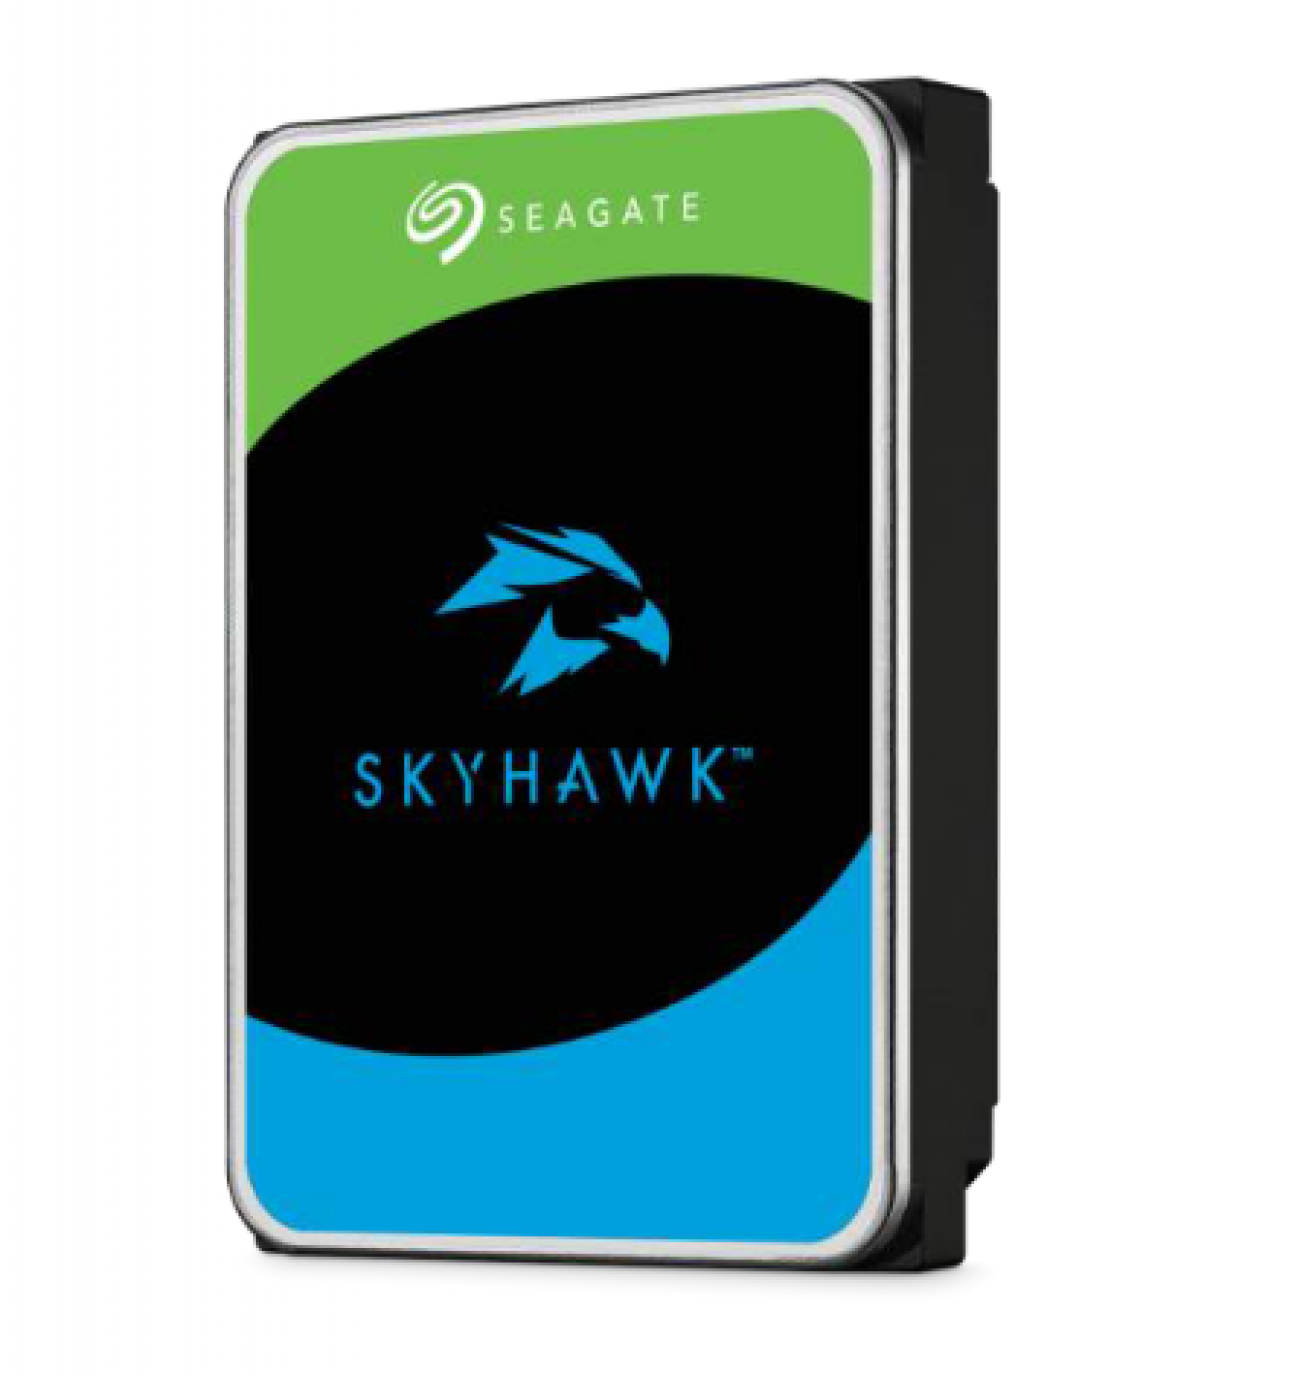 SEAGATE HDD SKYHAWK 4TB 3,5 SATA 6GB/S BUFFER 256MB